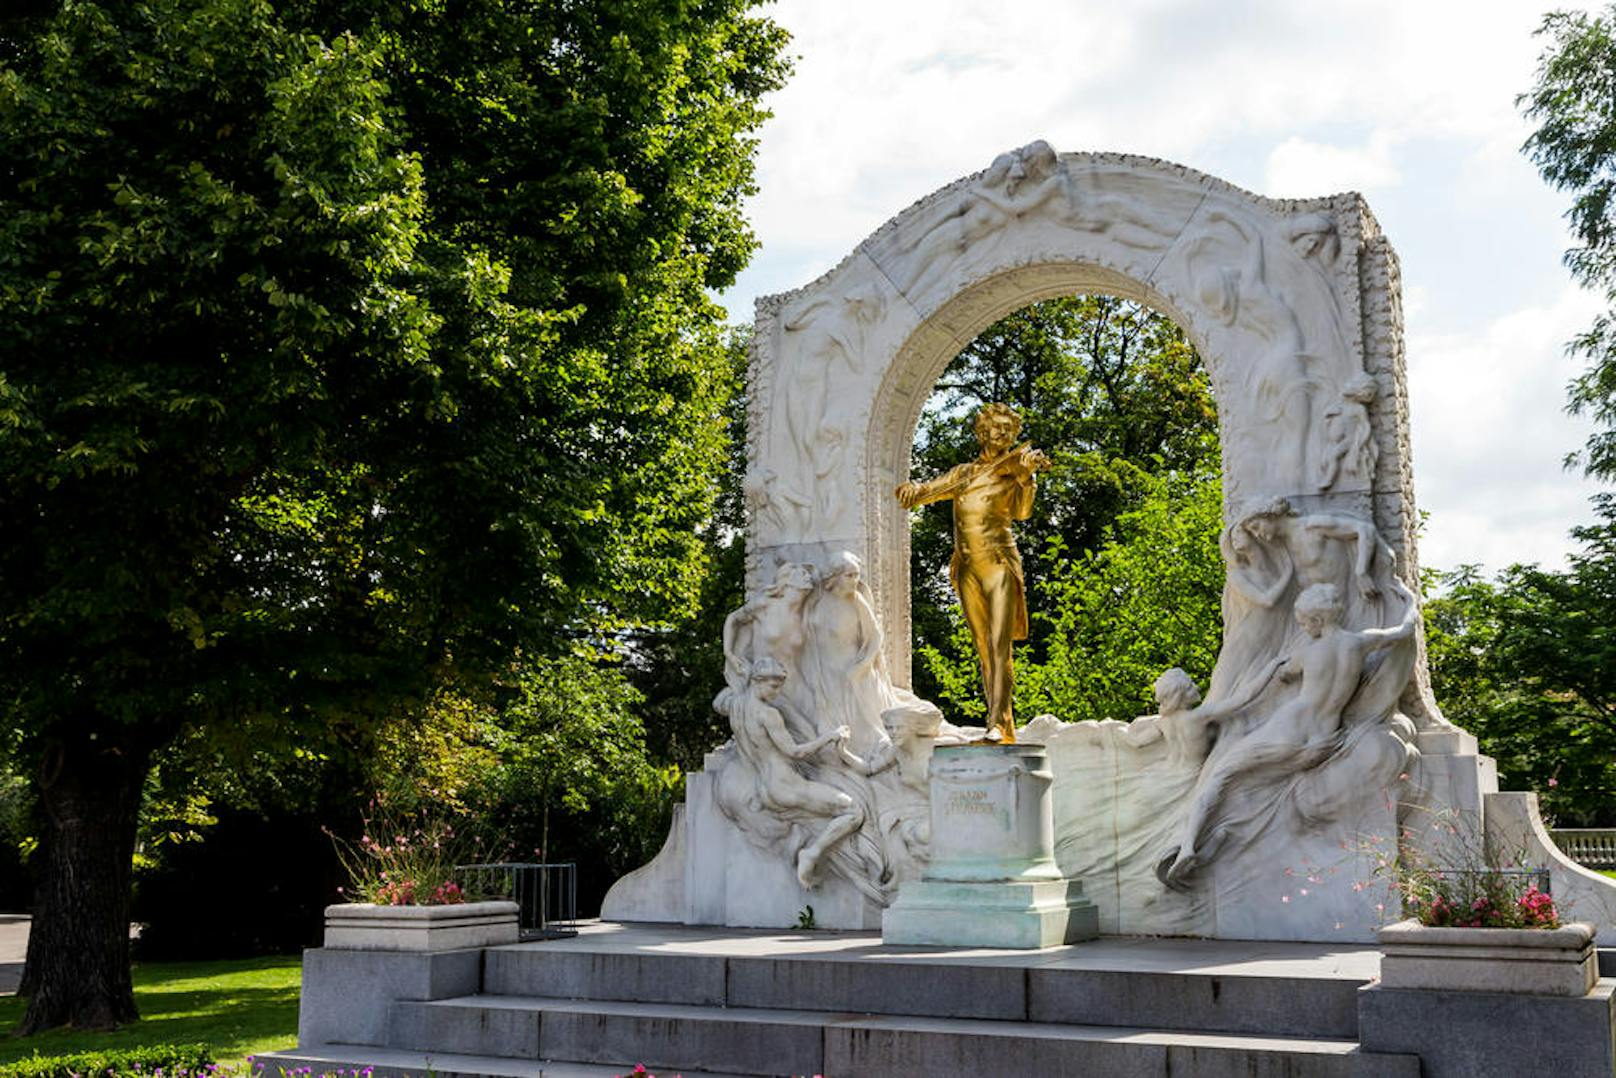 <b>Stadtpark, 1. Bezirk:</b> Sowohl Wiener, als auch Touristen, verbringen gerne Zeit im 65.000 Quadratmeter großen Park, der in der Mitte vom Wienfluss geteilt wird. Der erste Teil des Parks wurde 1862 eröffnet. Der Park ist für den Kursalon und zahlreiche Denkmäler - das berühmteste ist wohl das vergoldete Bronzestandbild von Johann Strauß Sohn - berühmt.